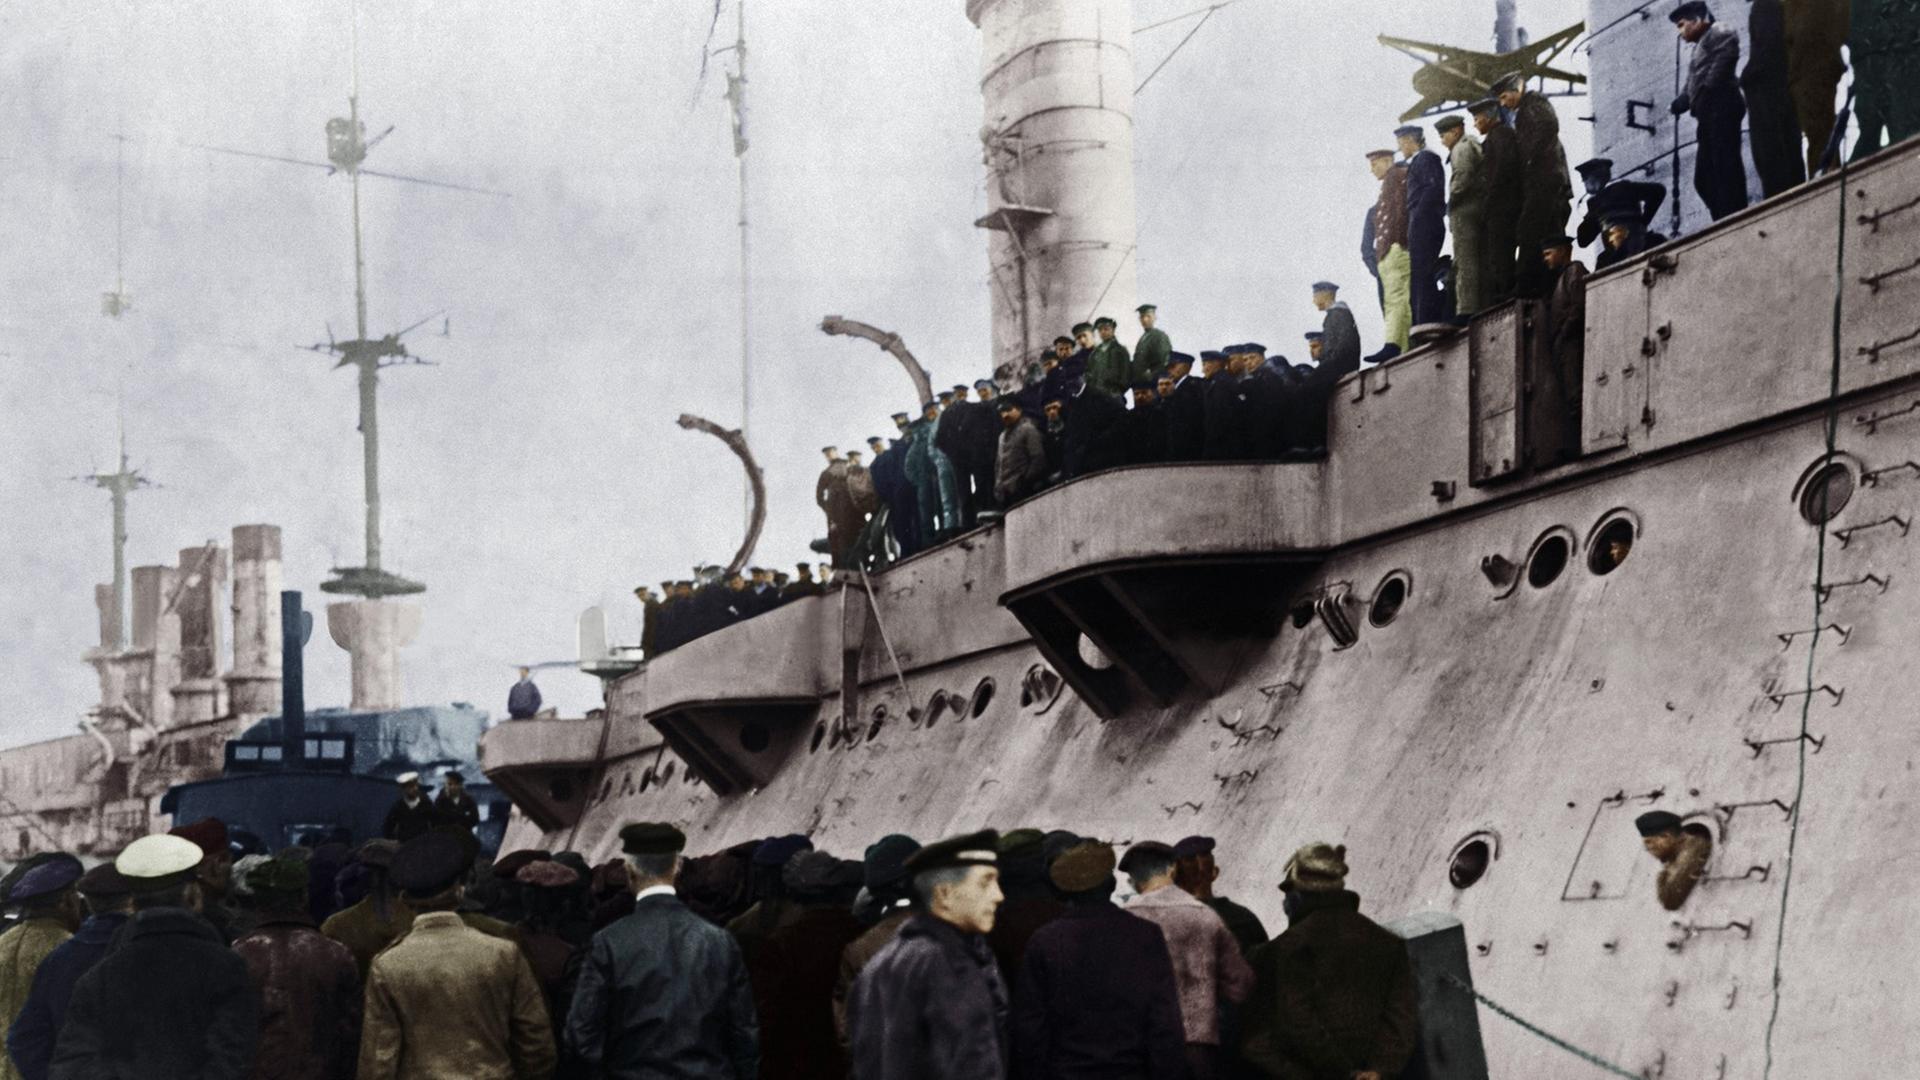 Zahlreiche Matrosen der Hochseeflotte stehen auf und vor einem der U-Boote, digital koloriertes Foto vom 5.11.1918